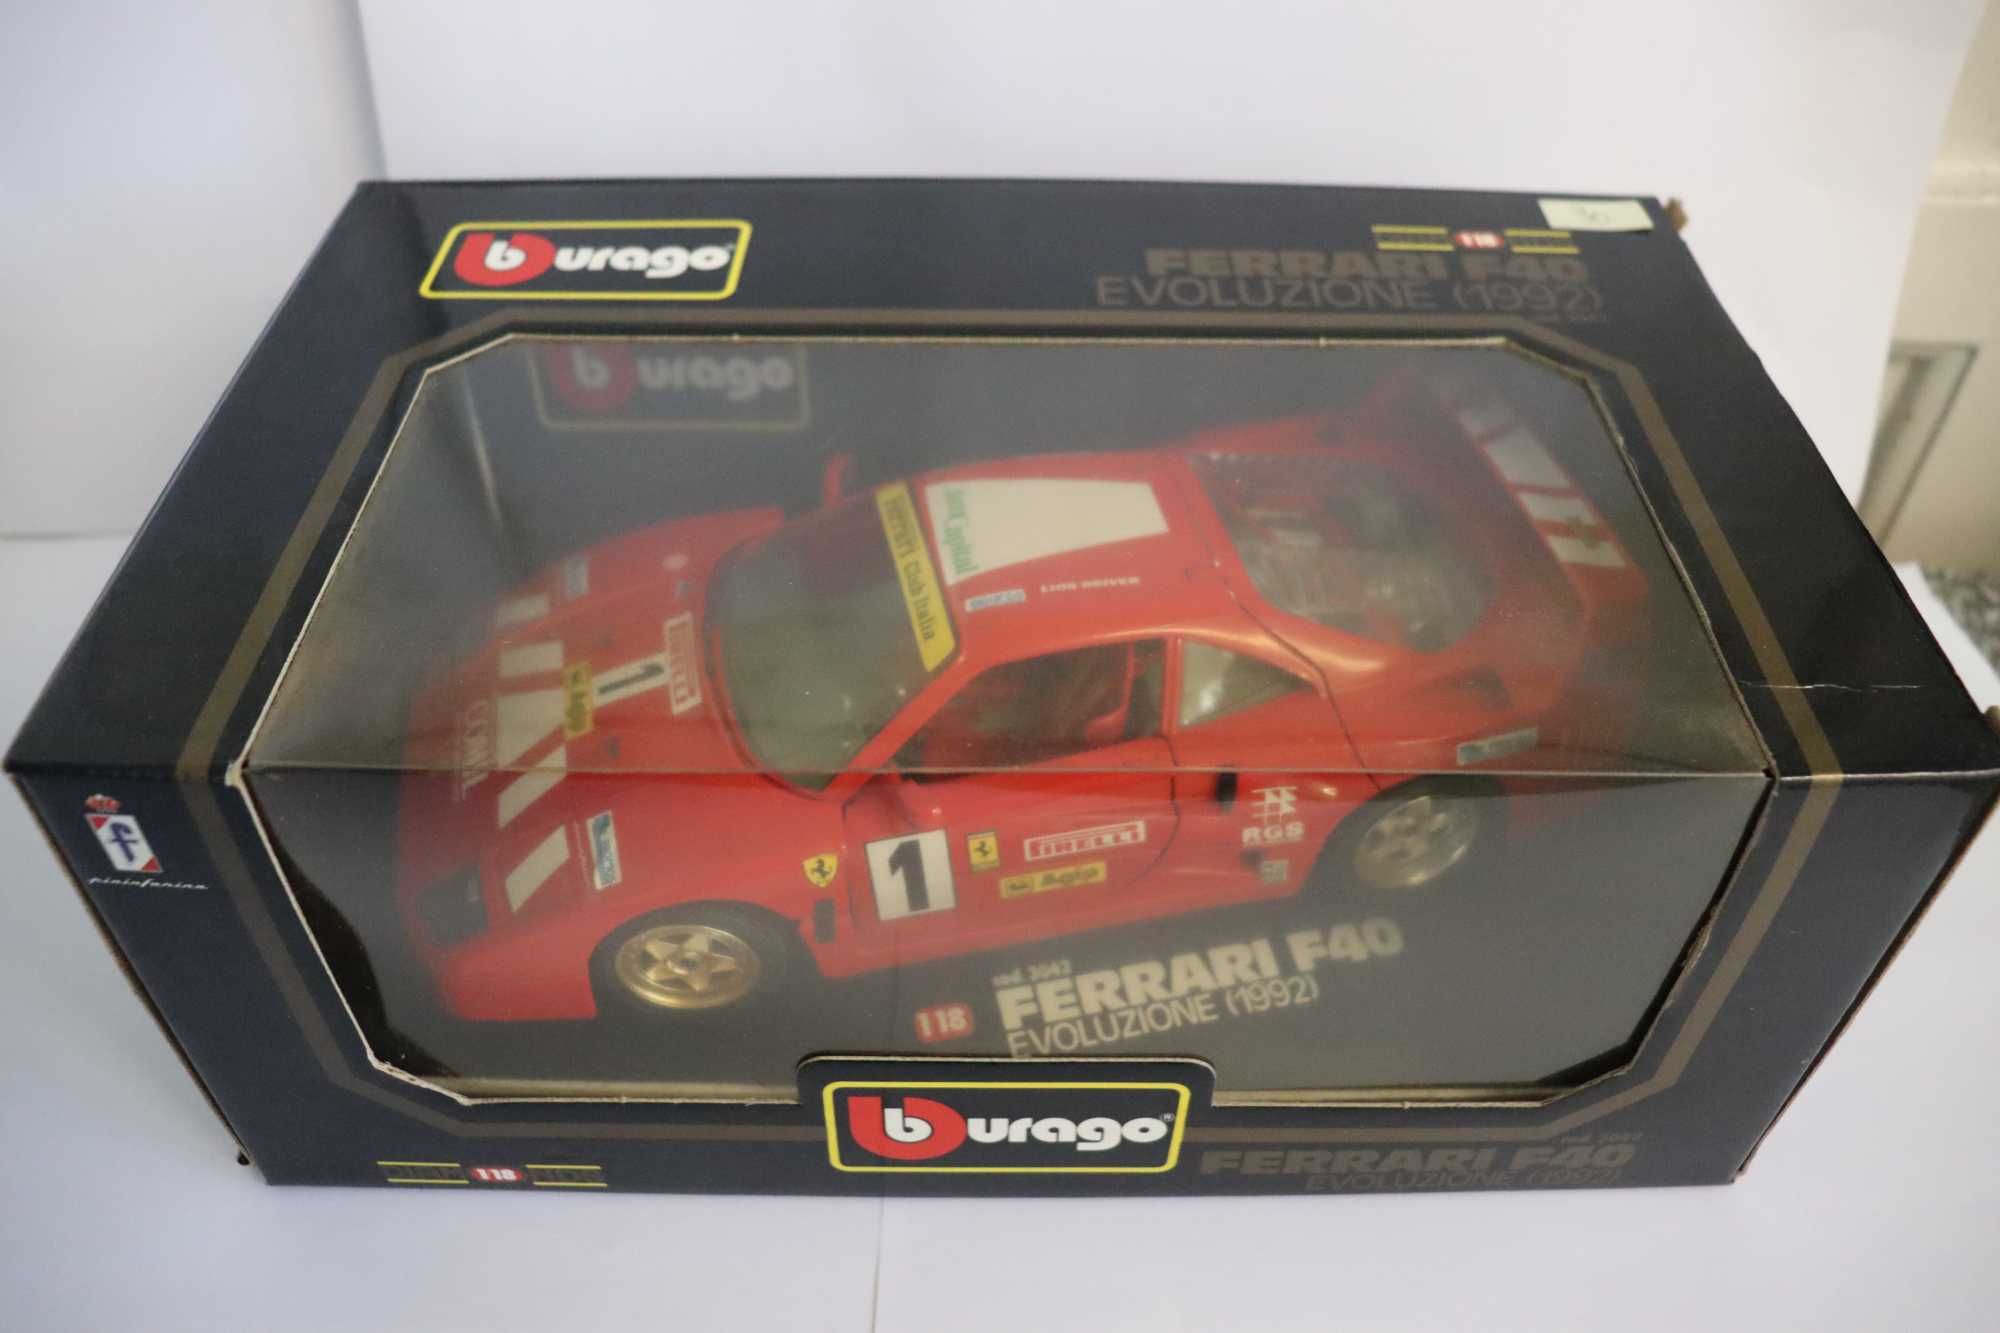 Ferrari F40 Evoluzione 1992